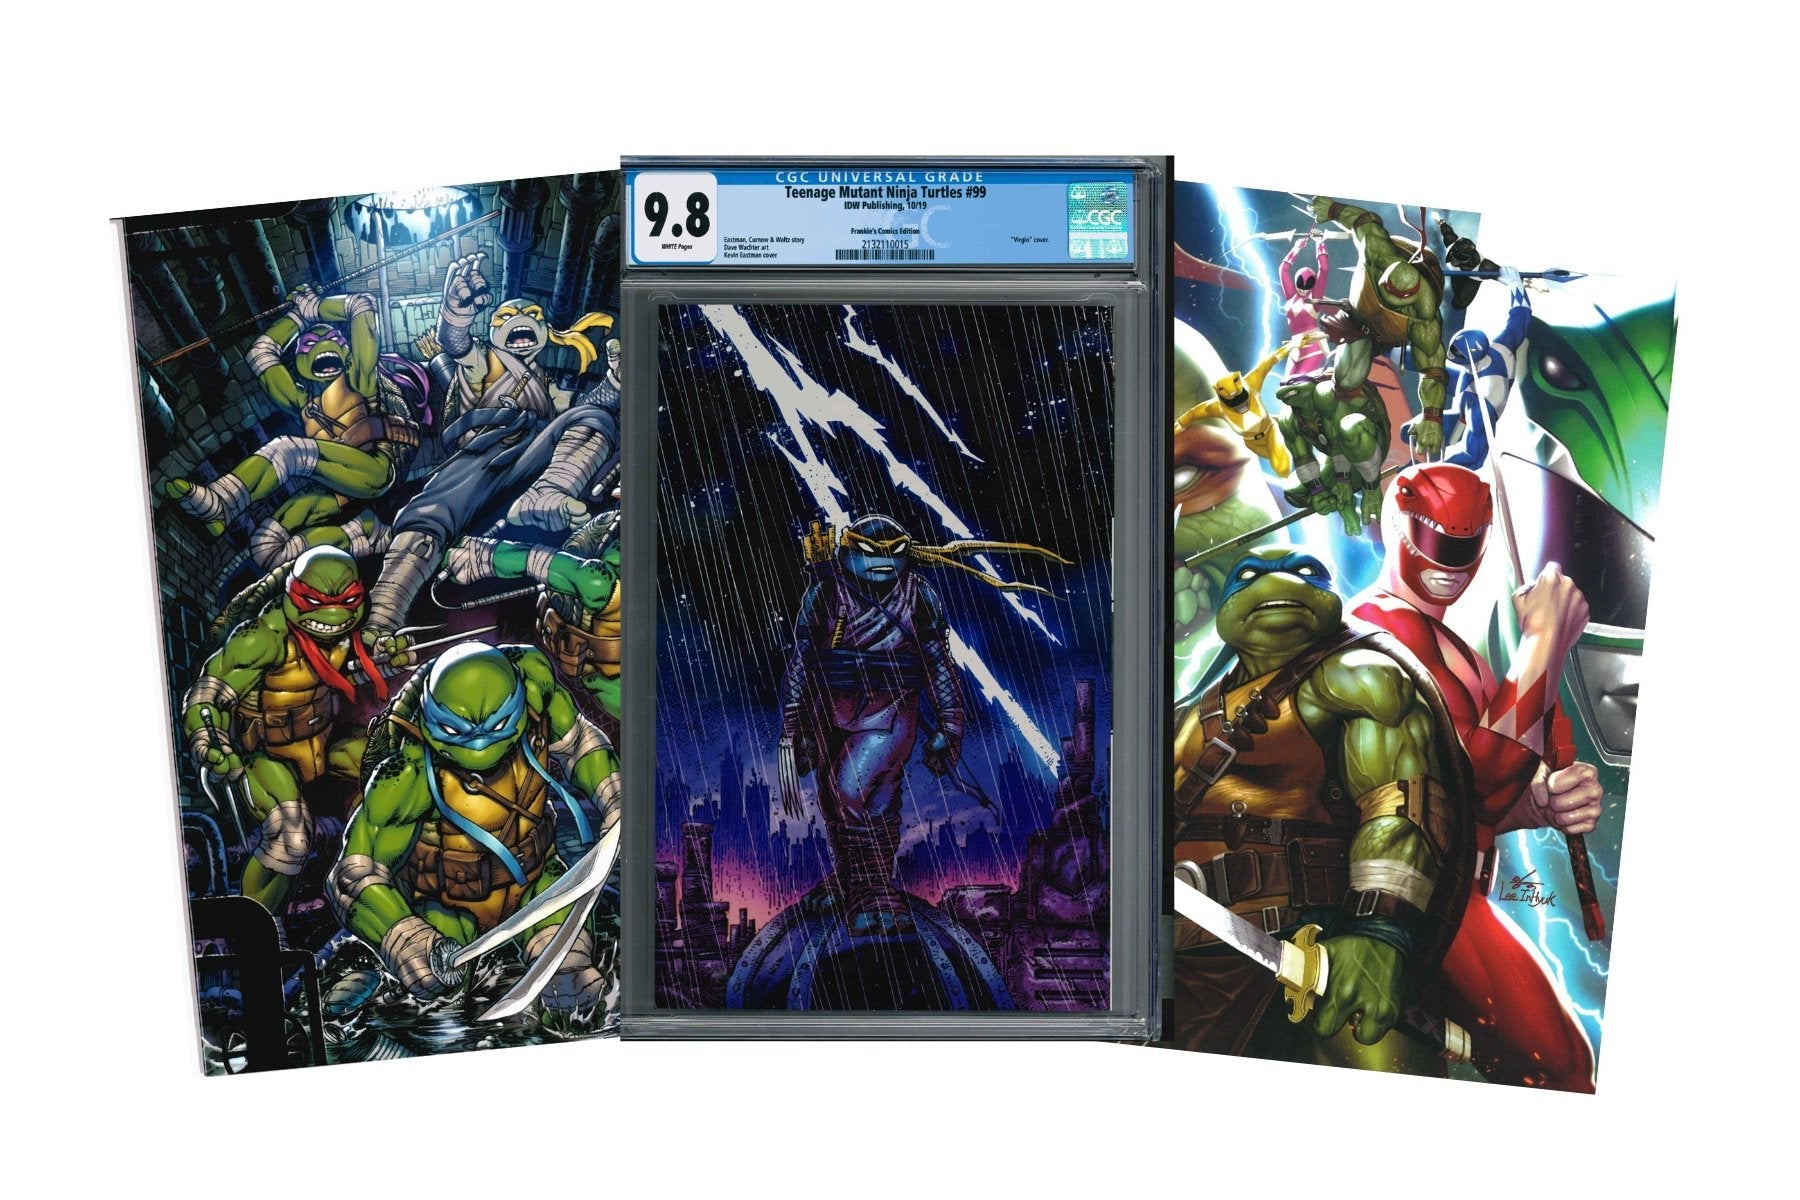 Teenage Mutant Ninja Turtles Comics Variant Cover